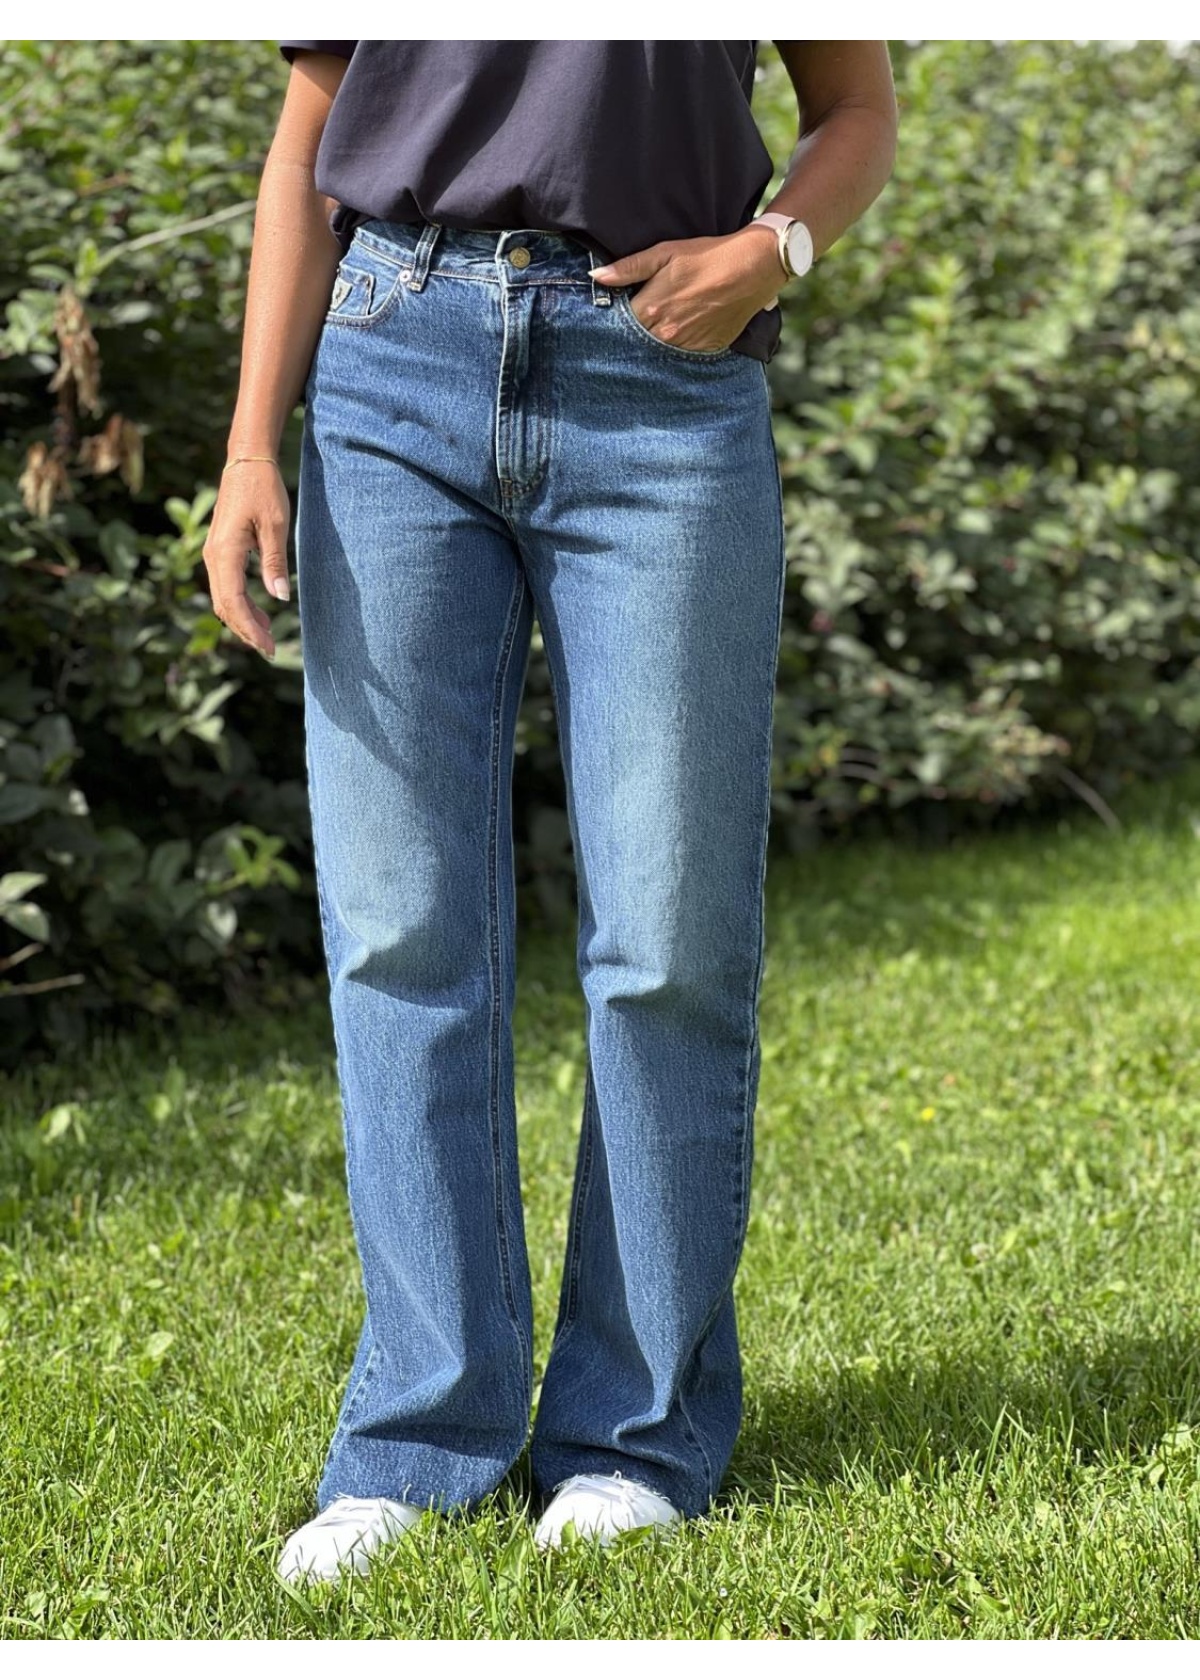 Lois Ninette Raw Jackson Veined jeans